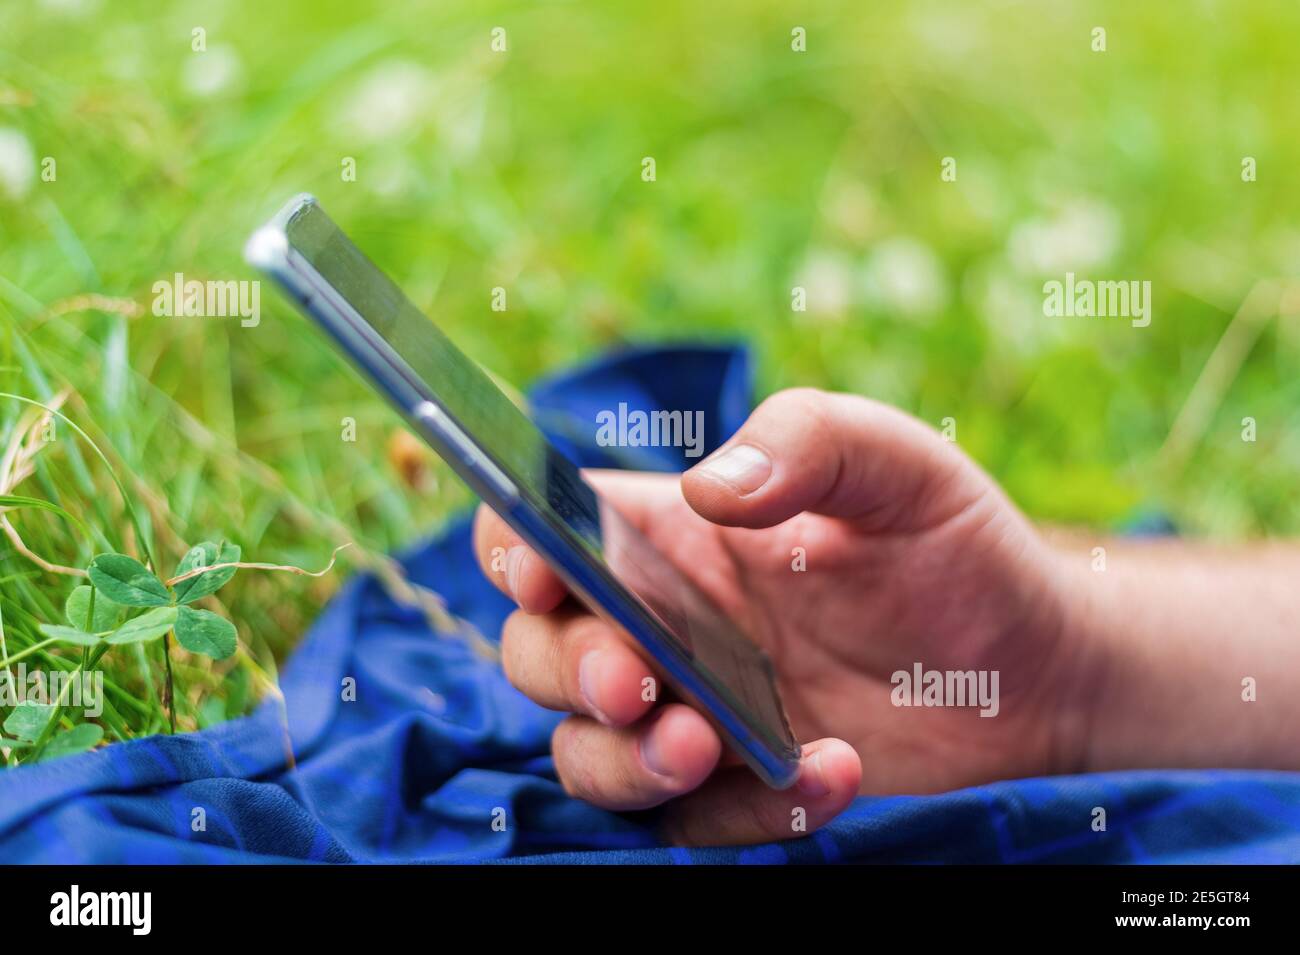 Erwachsener Mann hält Smartphone, während auf grünem Gras in liegen Stadtpark Stockfoto